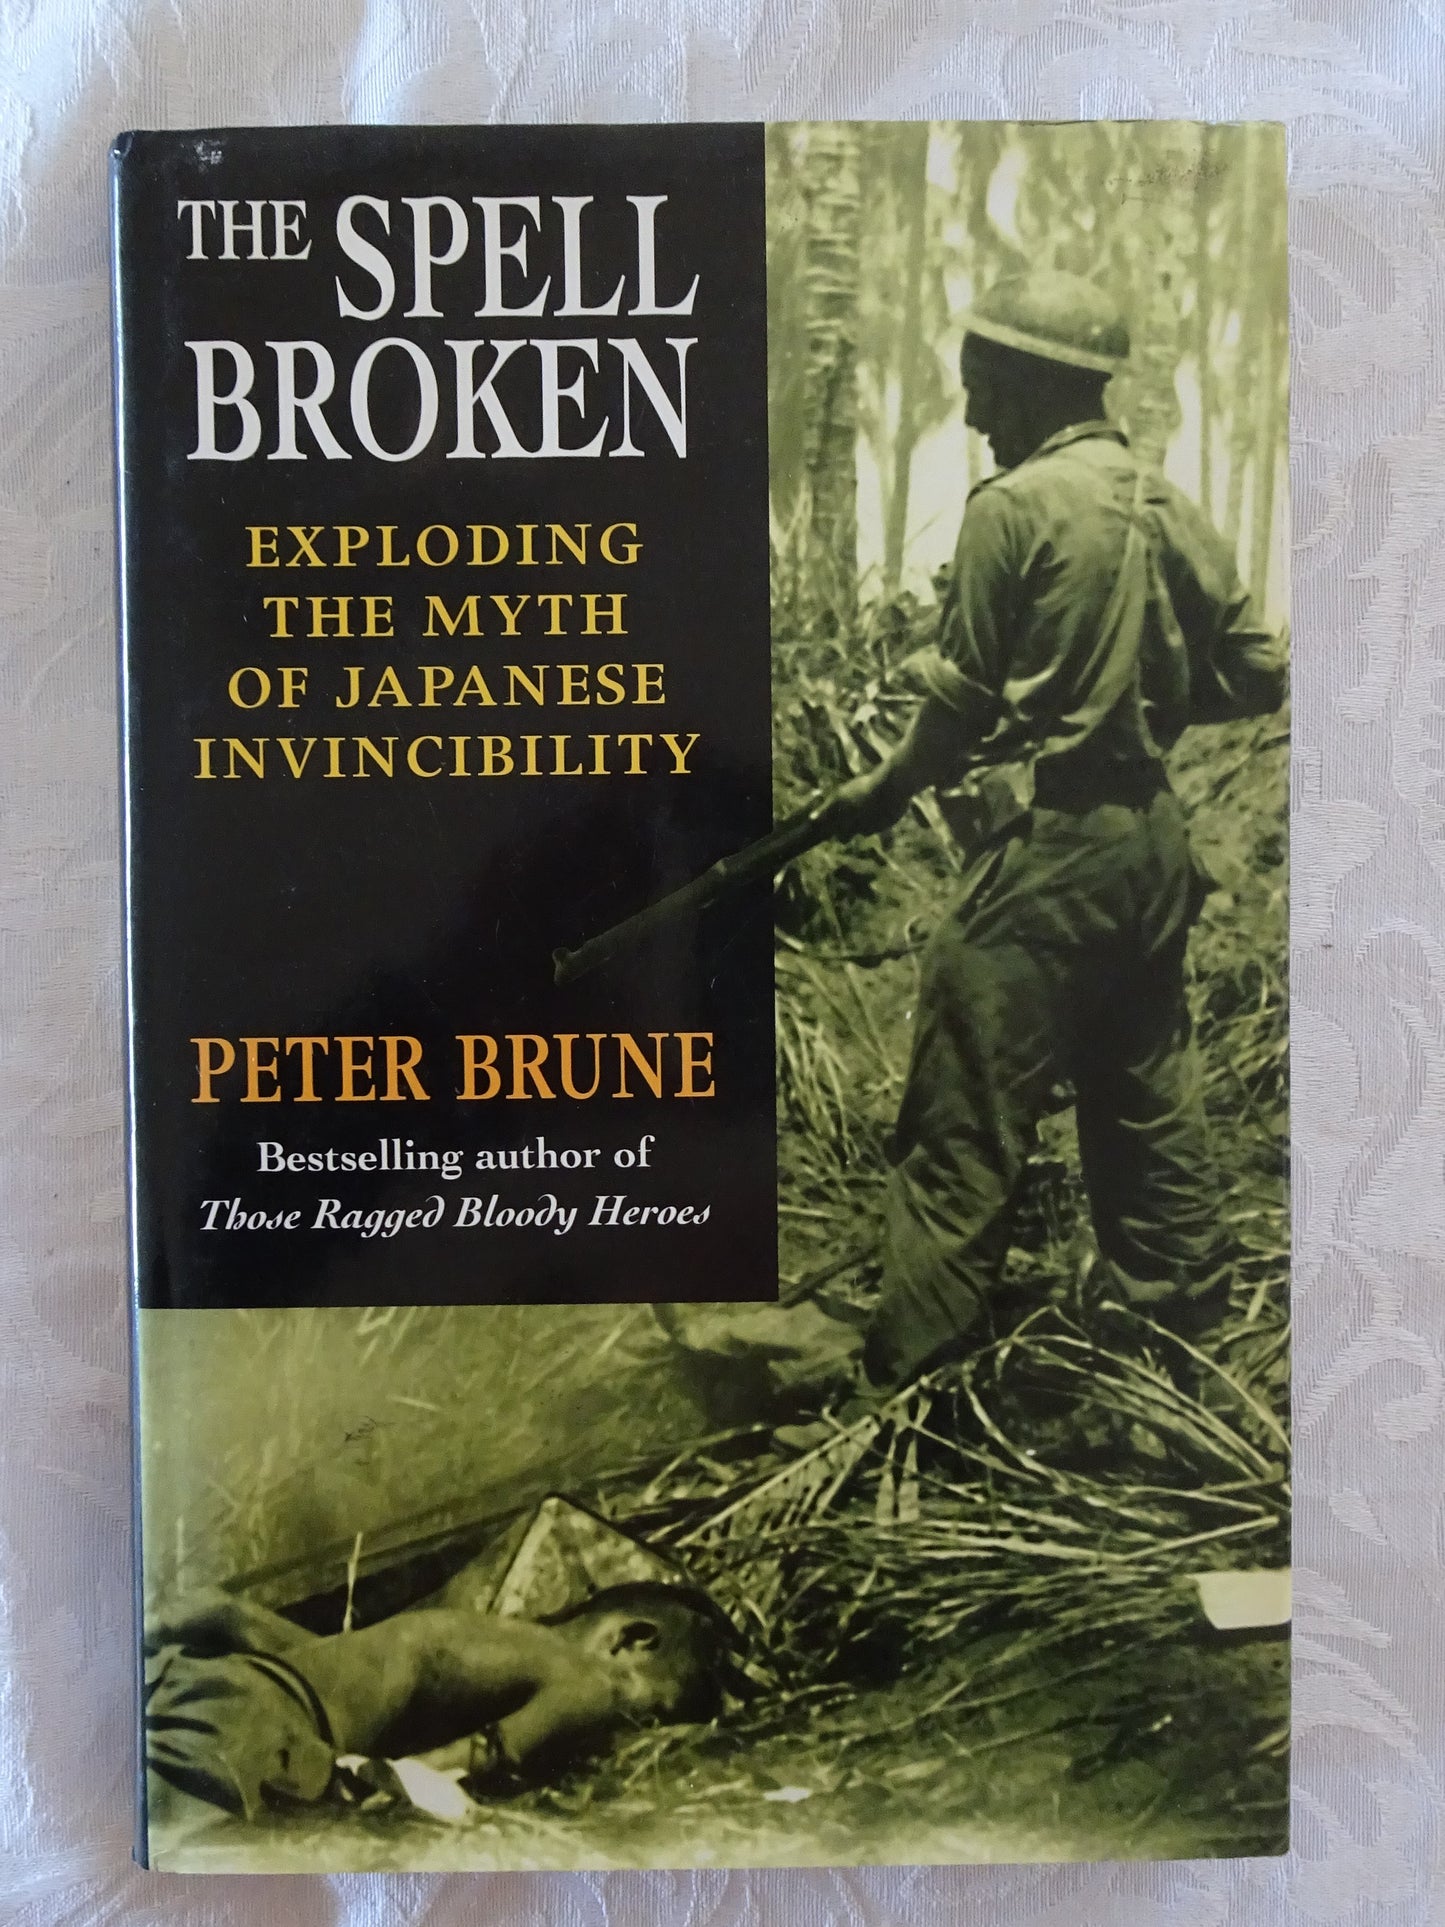 The Spell Broken by Peter Brune